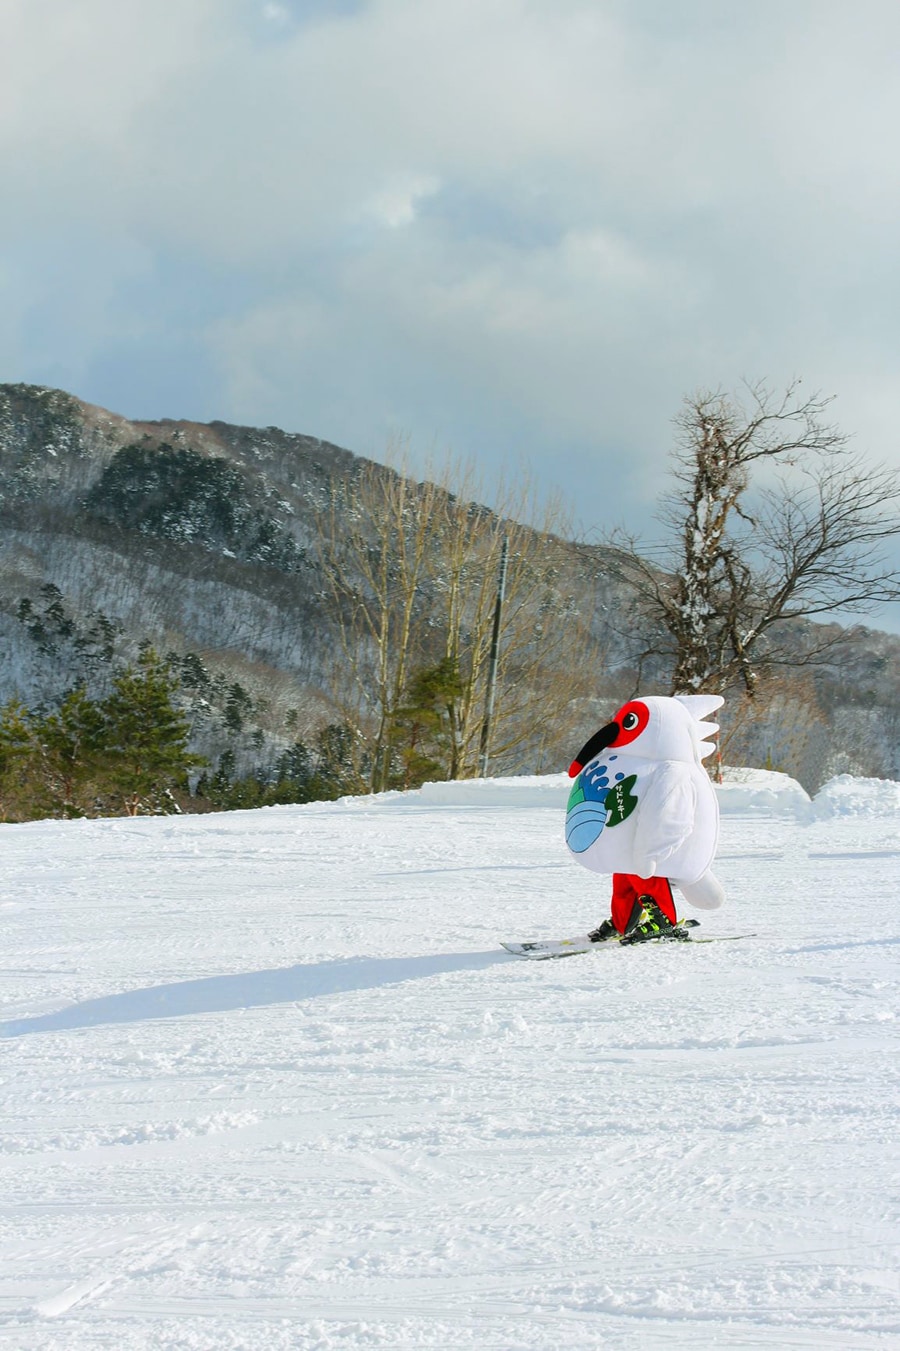 スキーを履いてゲレンデを滑るのは、トキをモデルにしたゆるキャラ「サドッキー」。🄫佐渡市役所